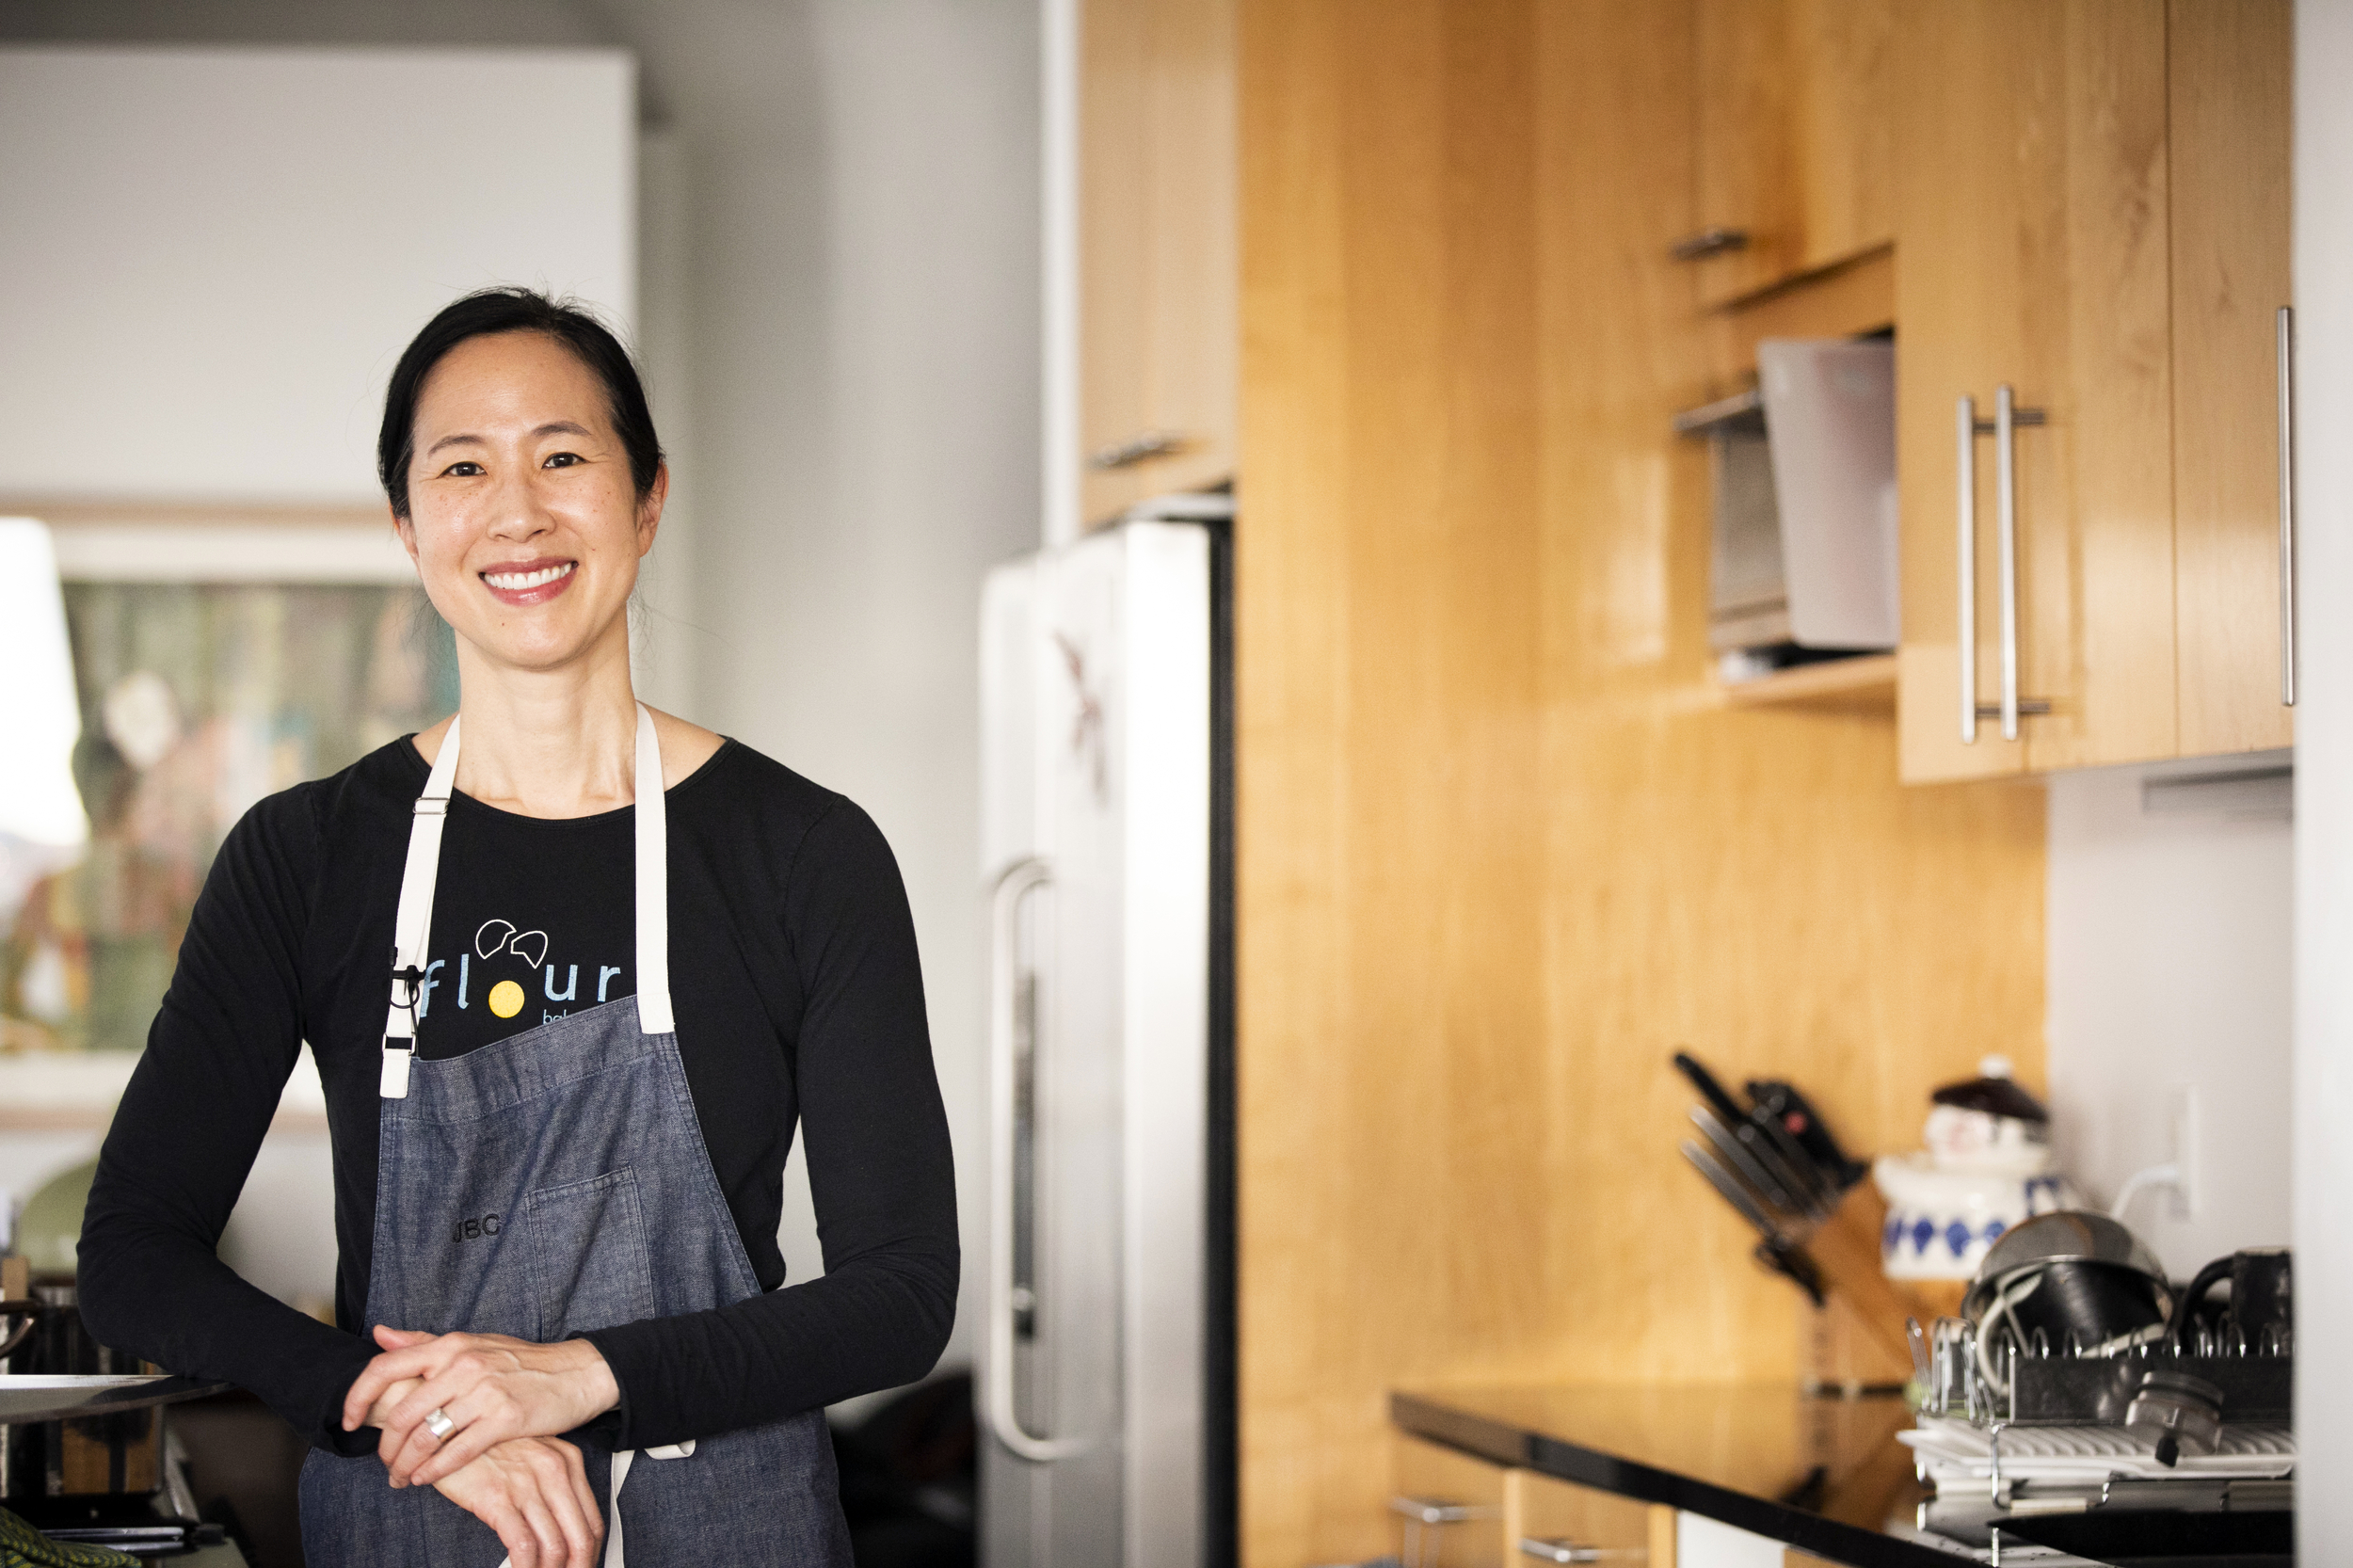 Joanne Chang wears an apron in a kitchen